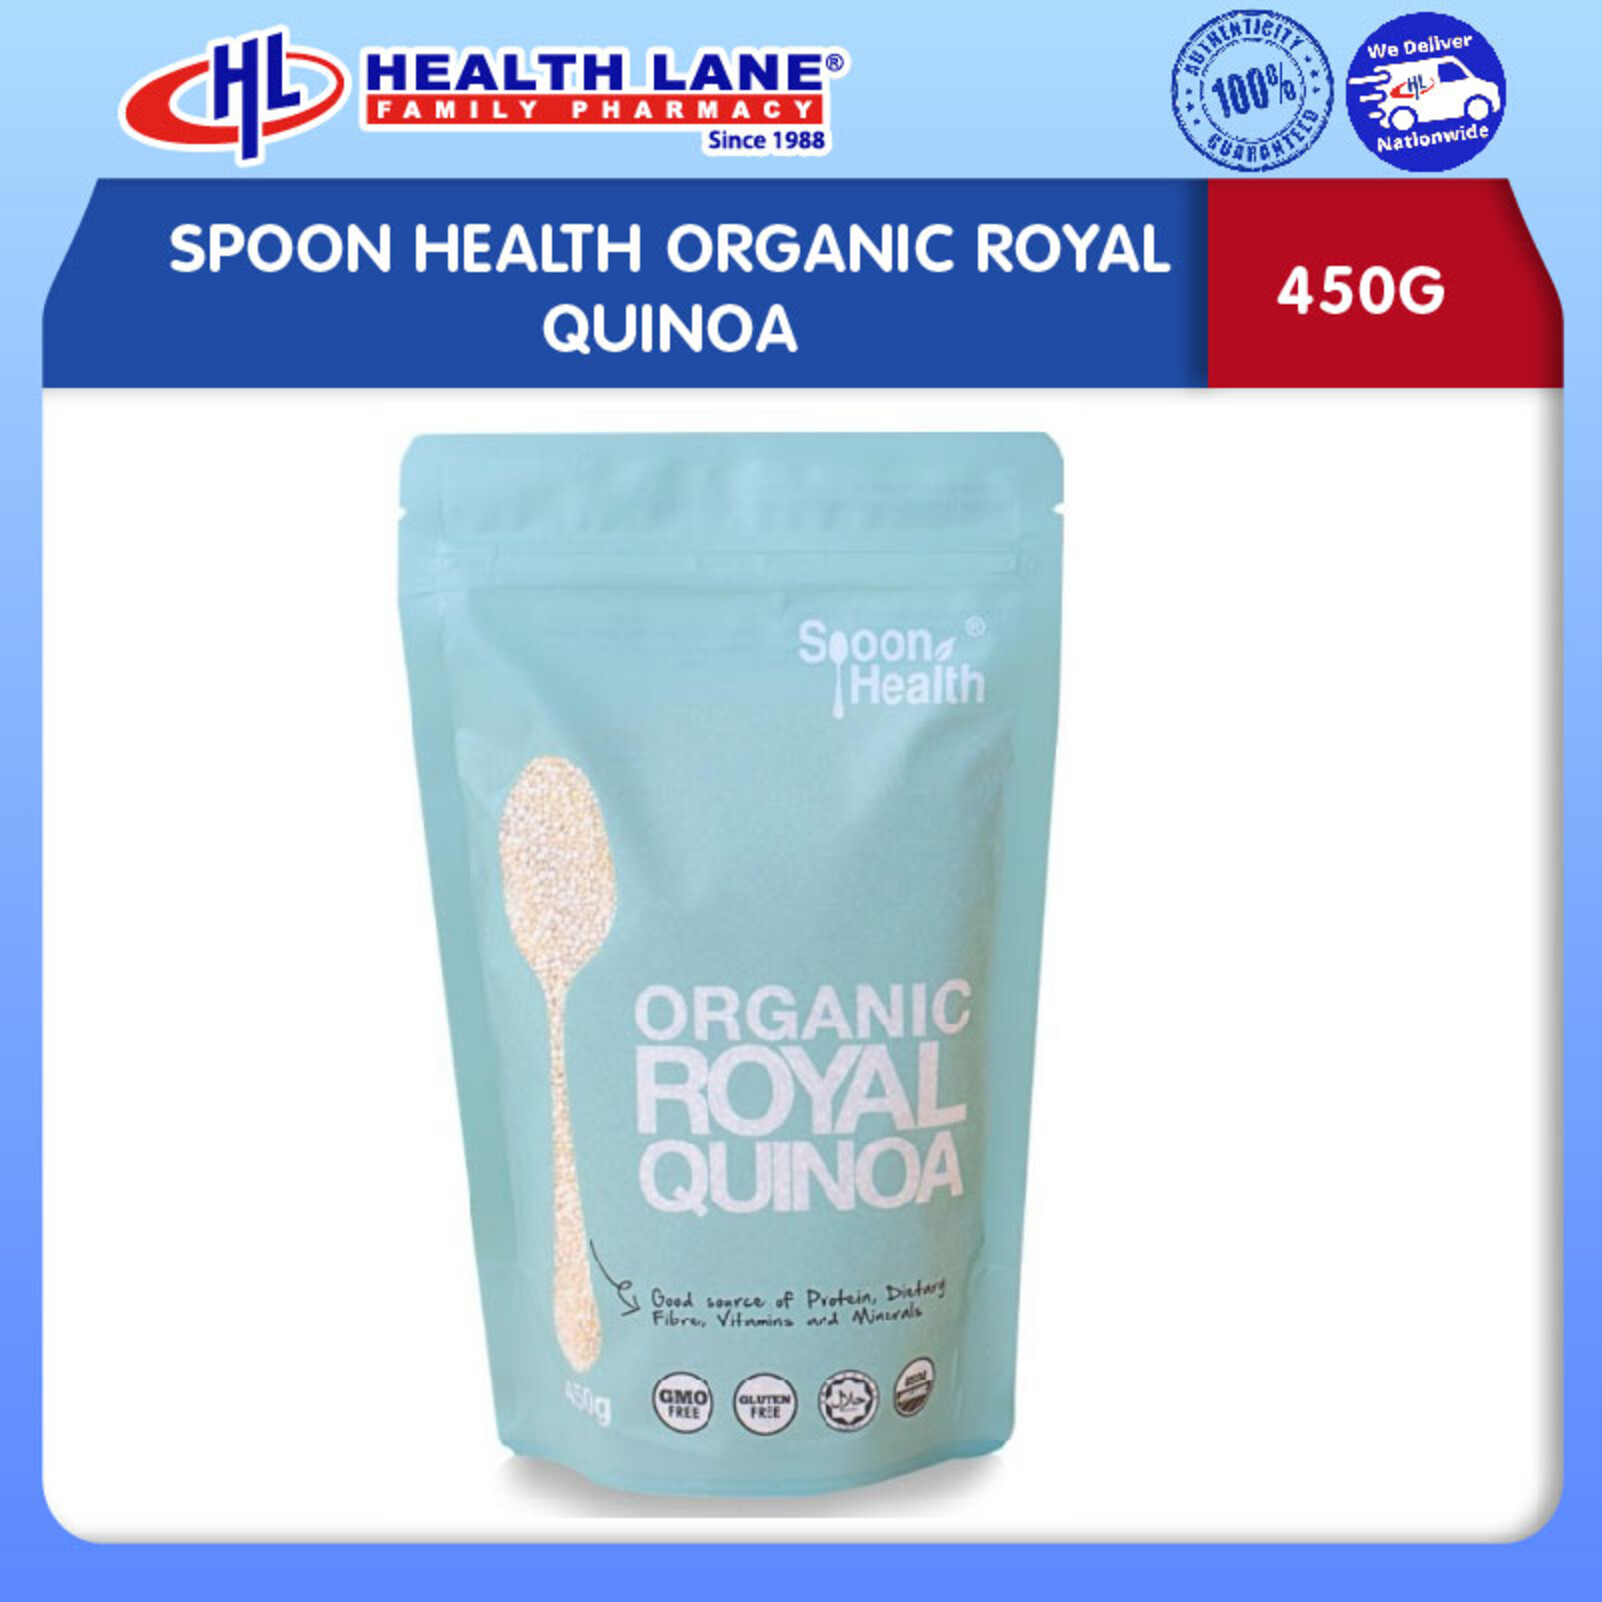 SPOON HEALTH ORGANIC ROYAL QUINOA (450G)